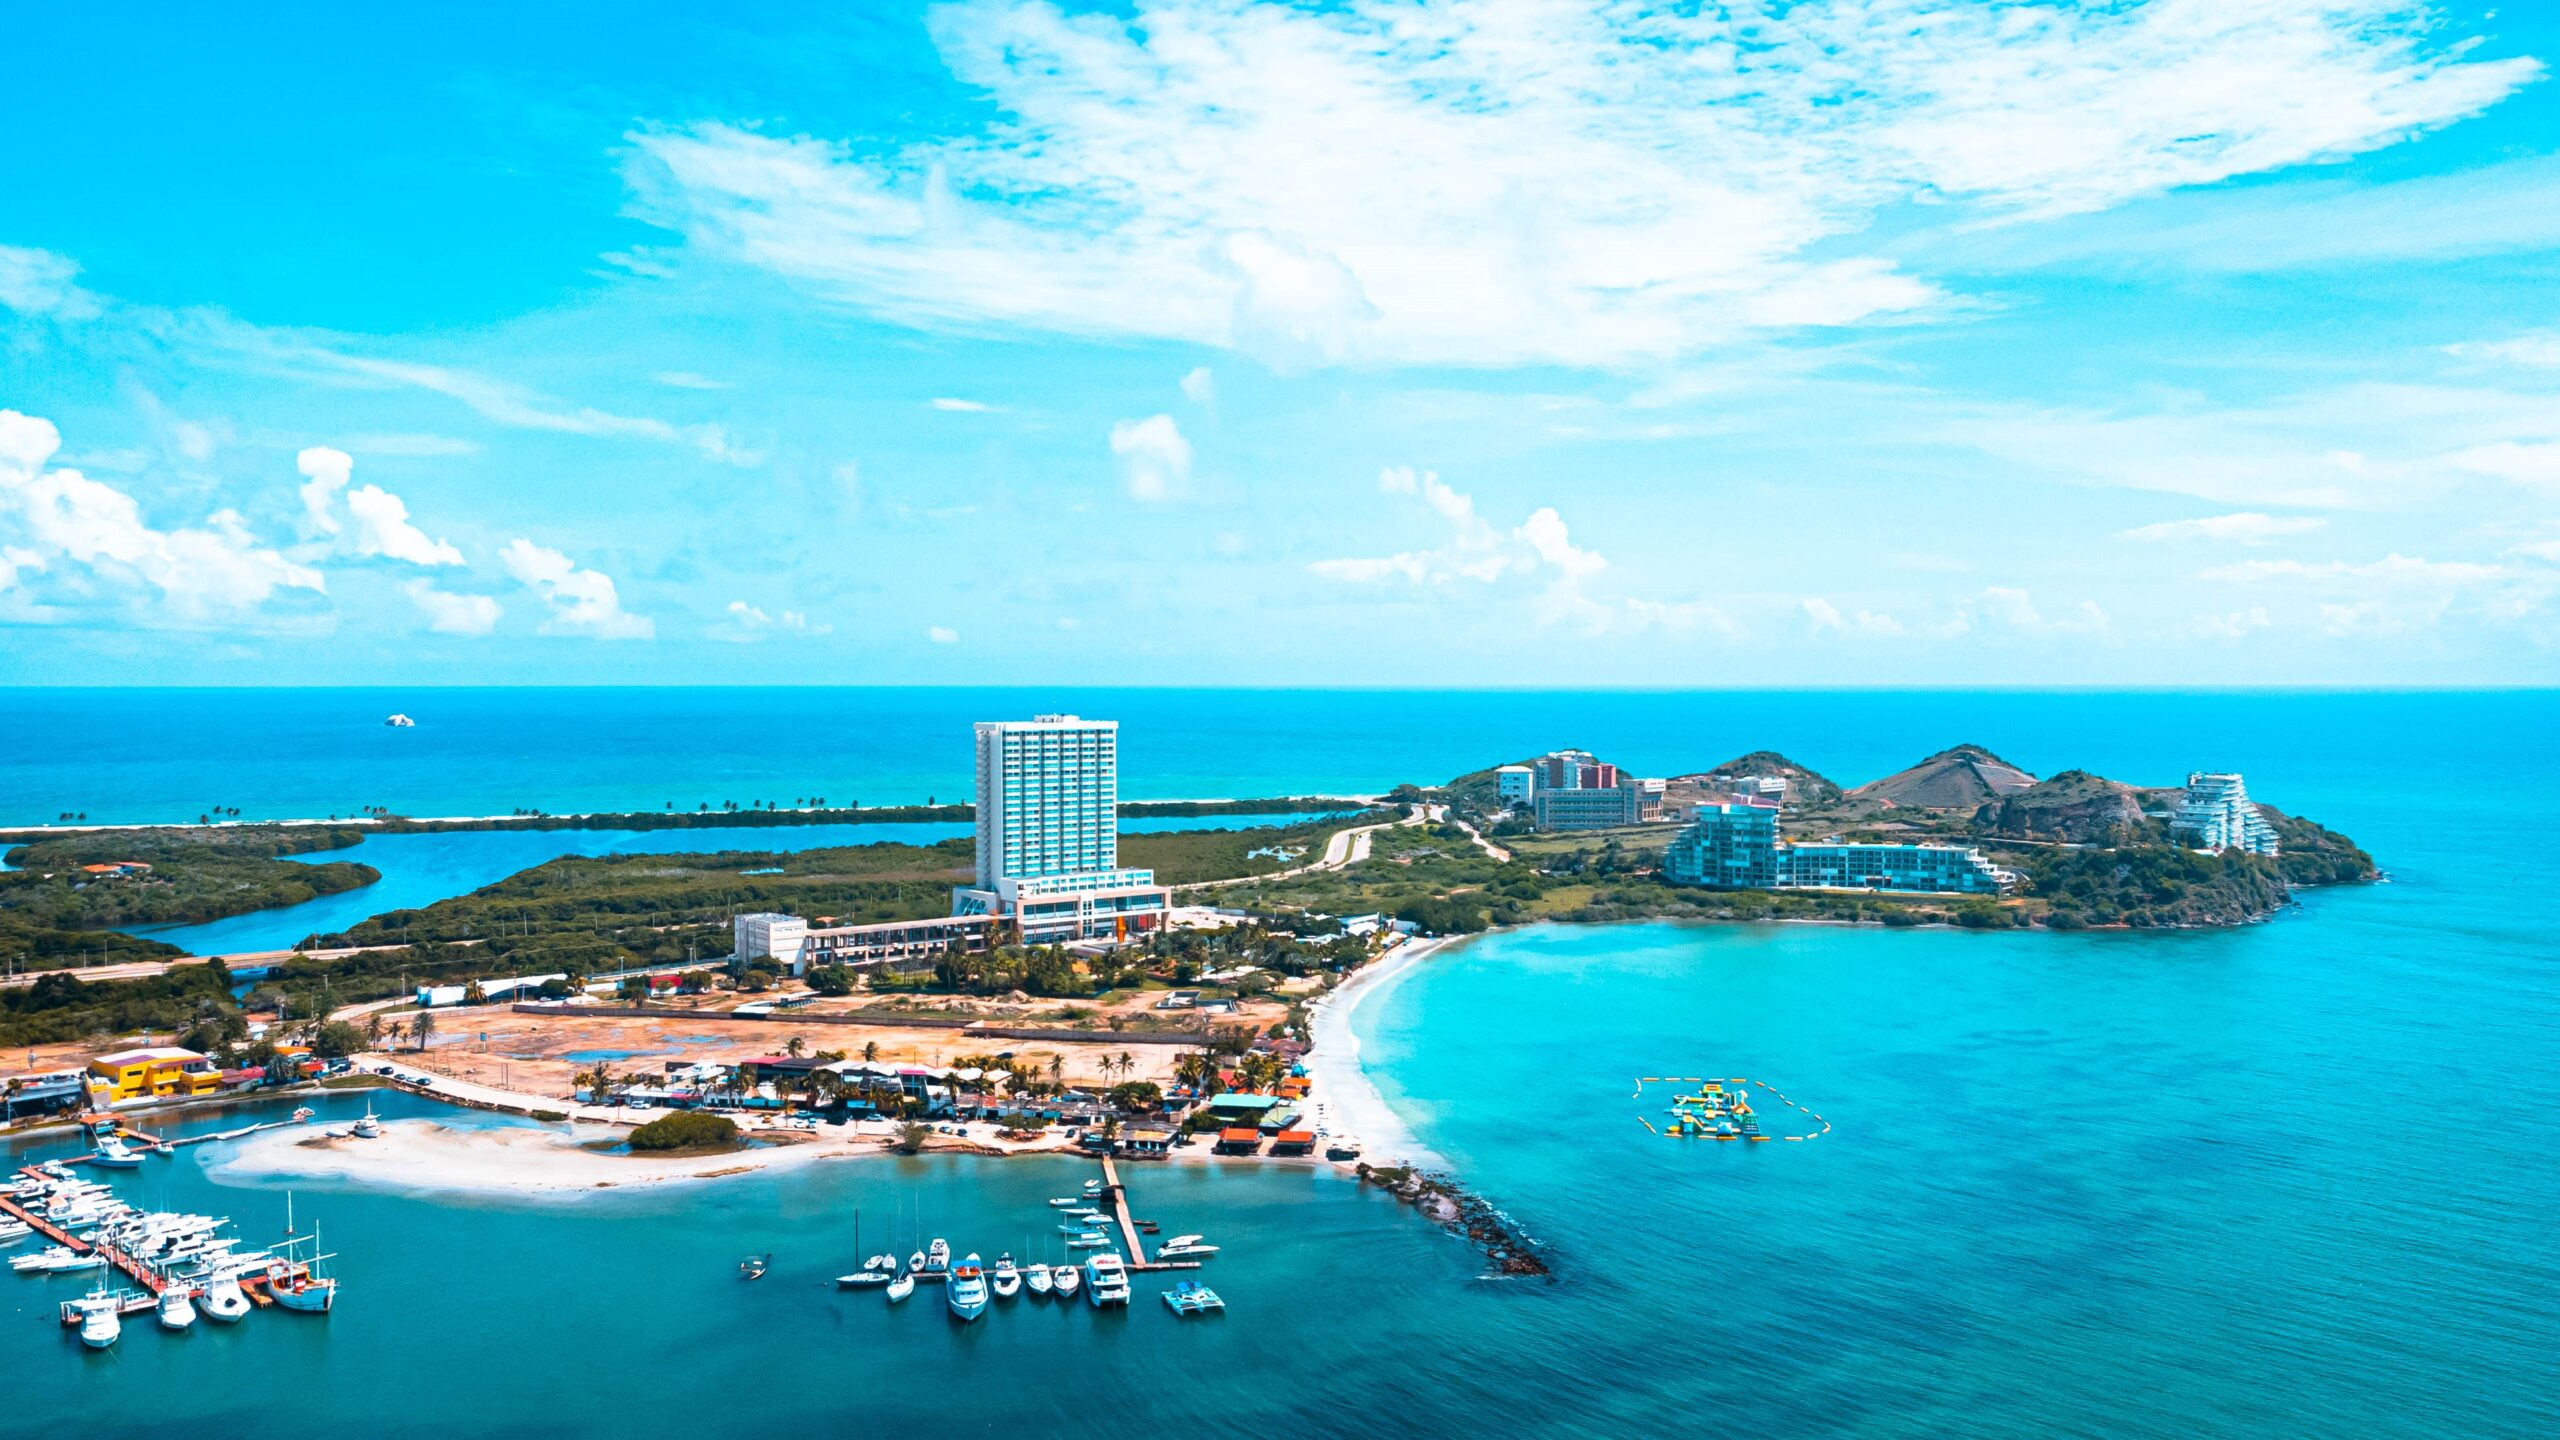 Con una ubicación envidiable, a pocos pasos de Playa Concorde y Playa La Caracola, el Wyndham Concorde Resort Isla Margarita es el lugar ideal para disfrutar sus vacaciones 5 estrellas en el Caribe